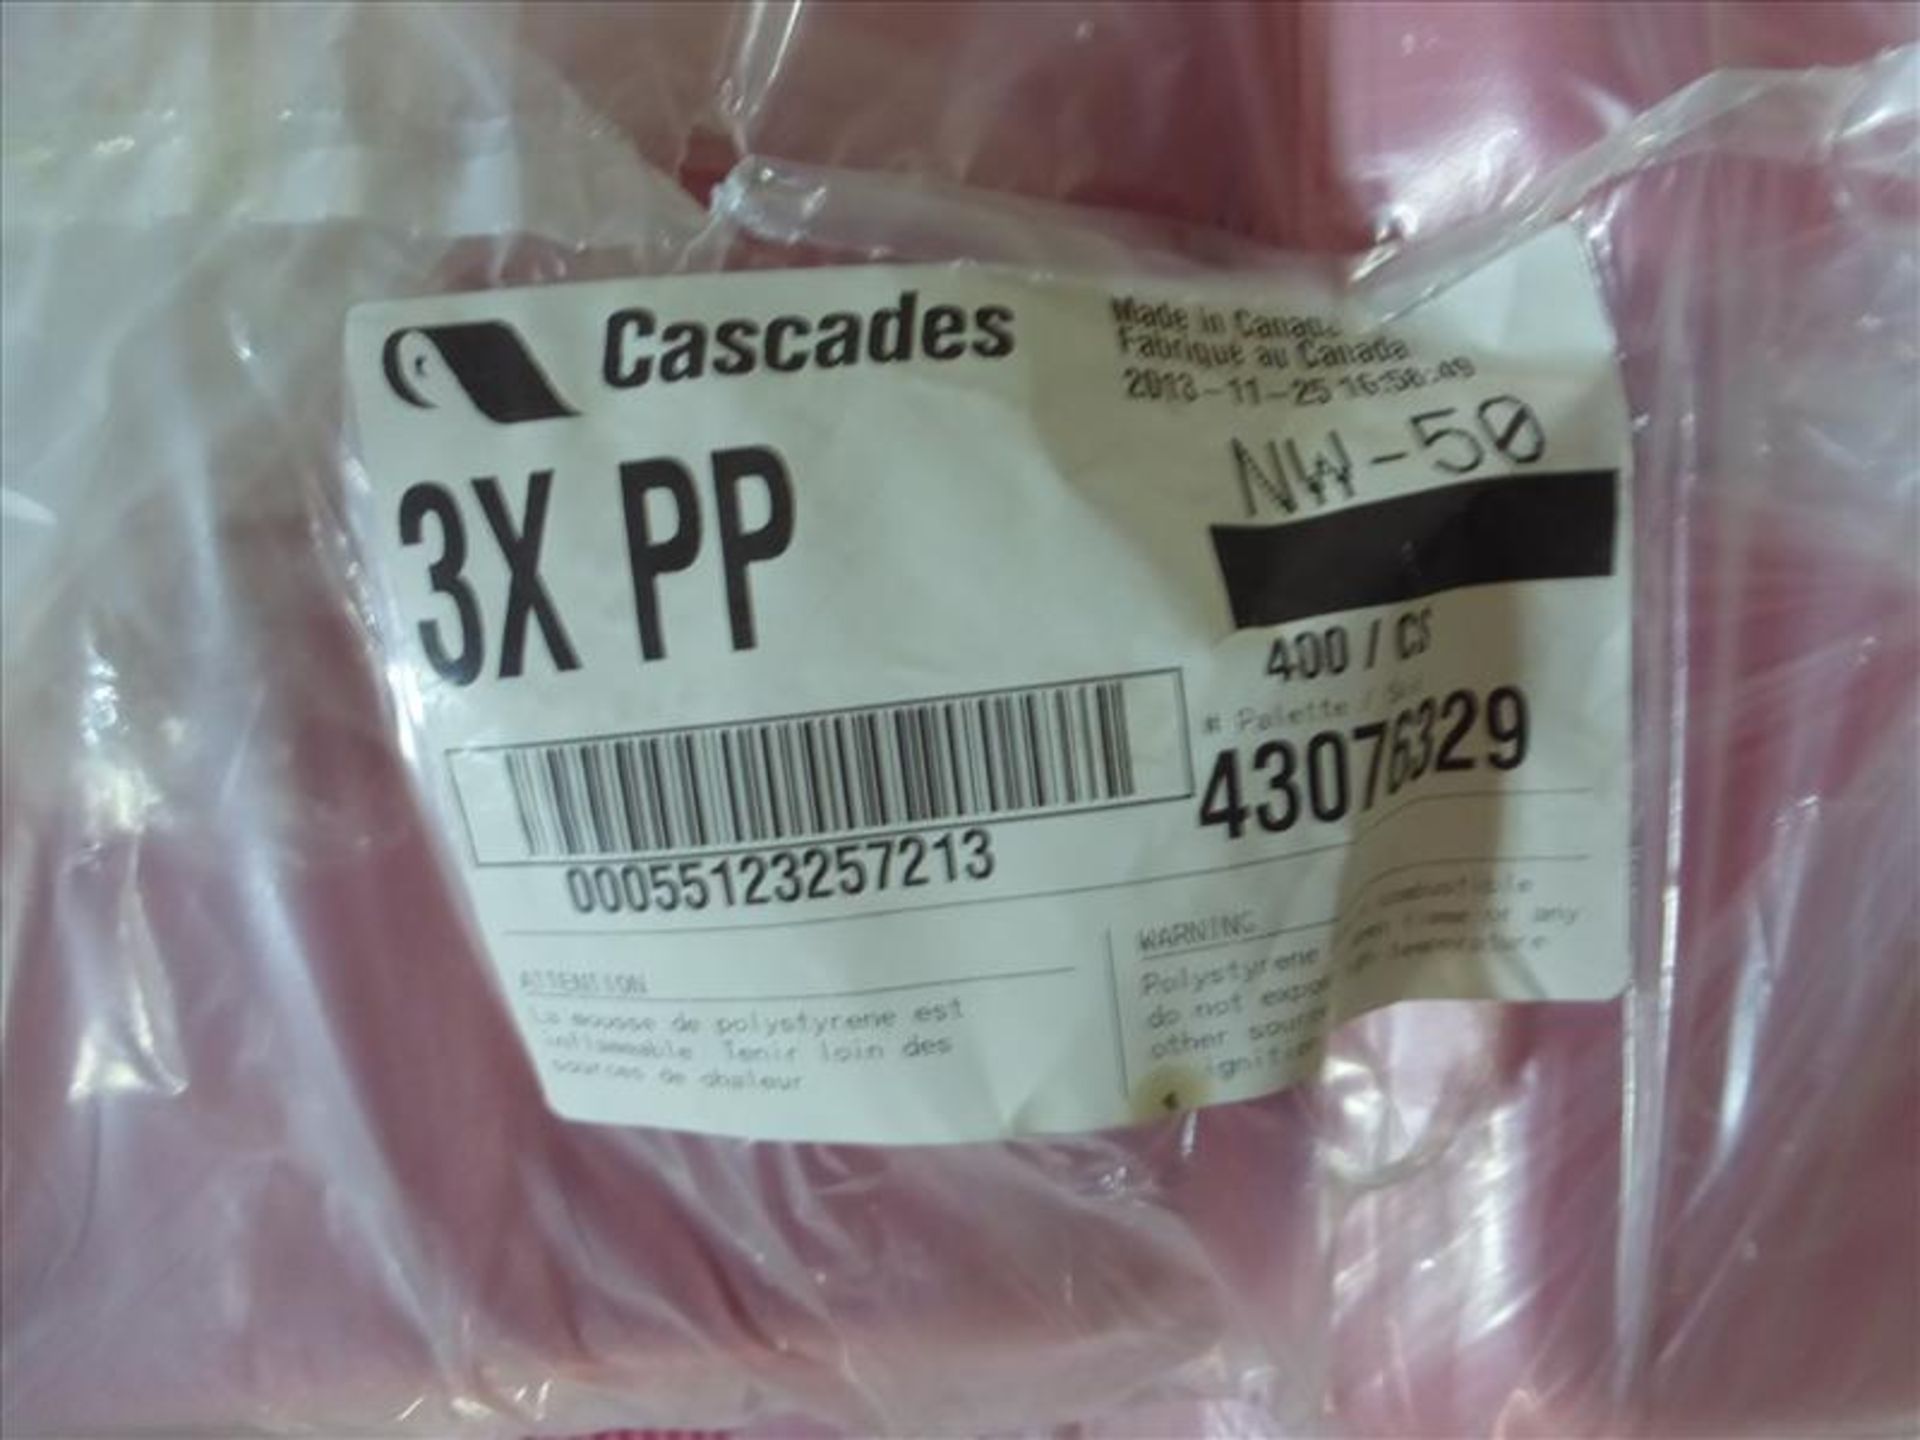 (16 bundles, 6400) 3 x PP overwrap foam trays, Cascade, pink